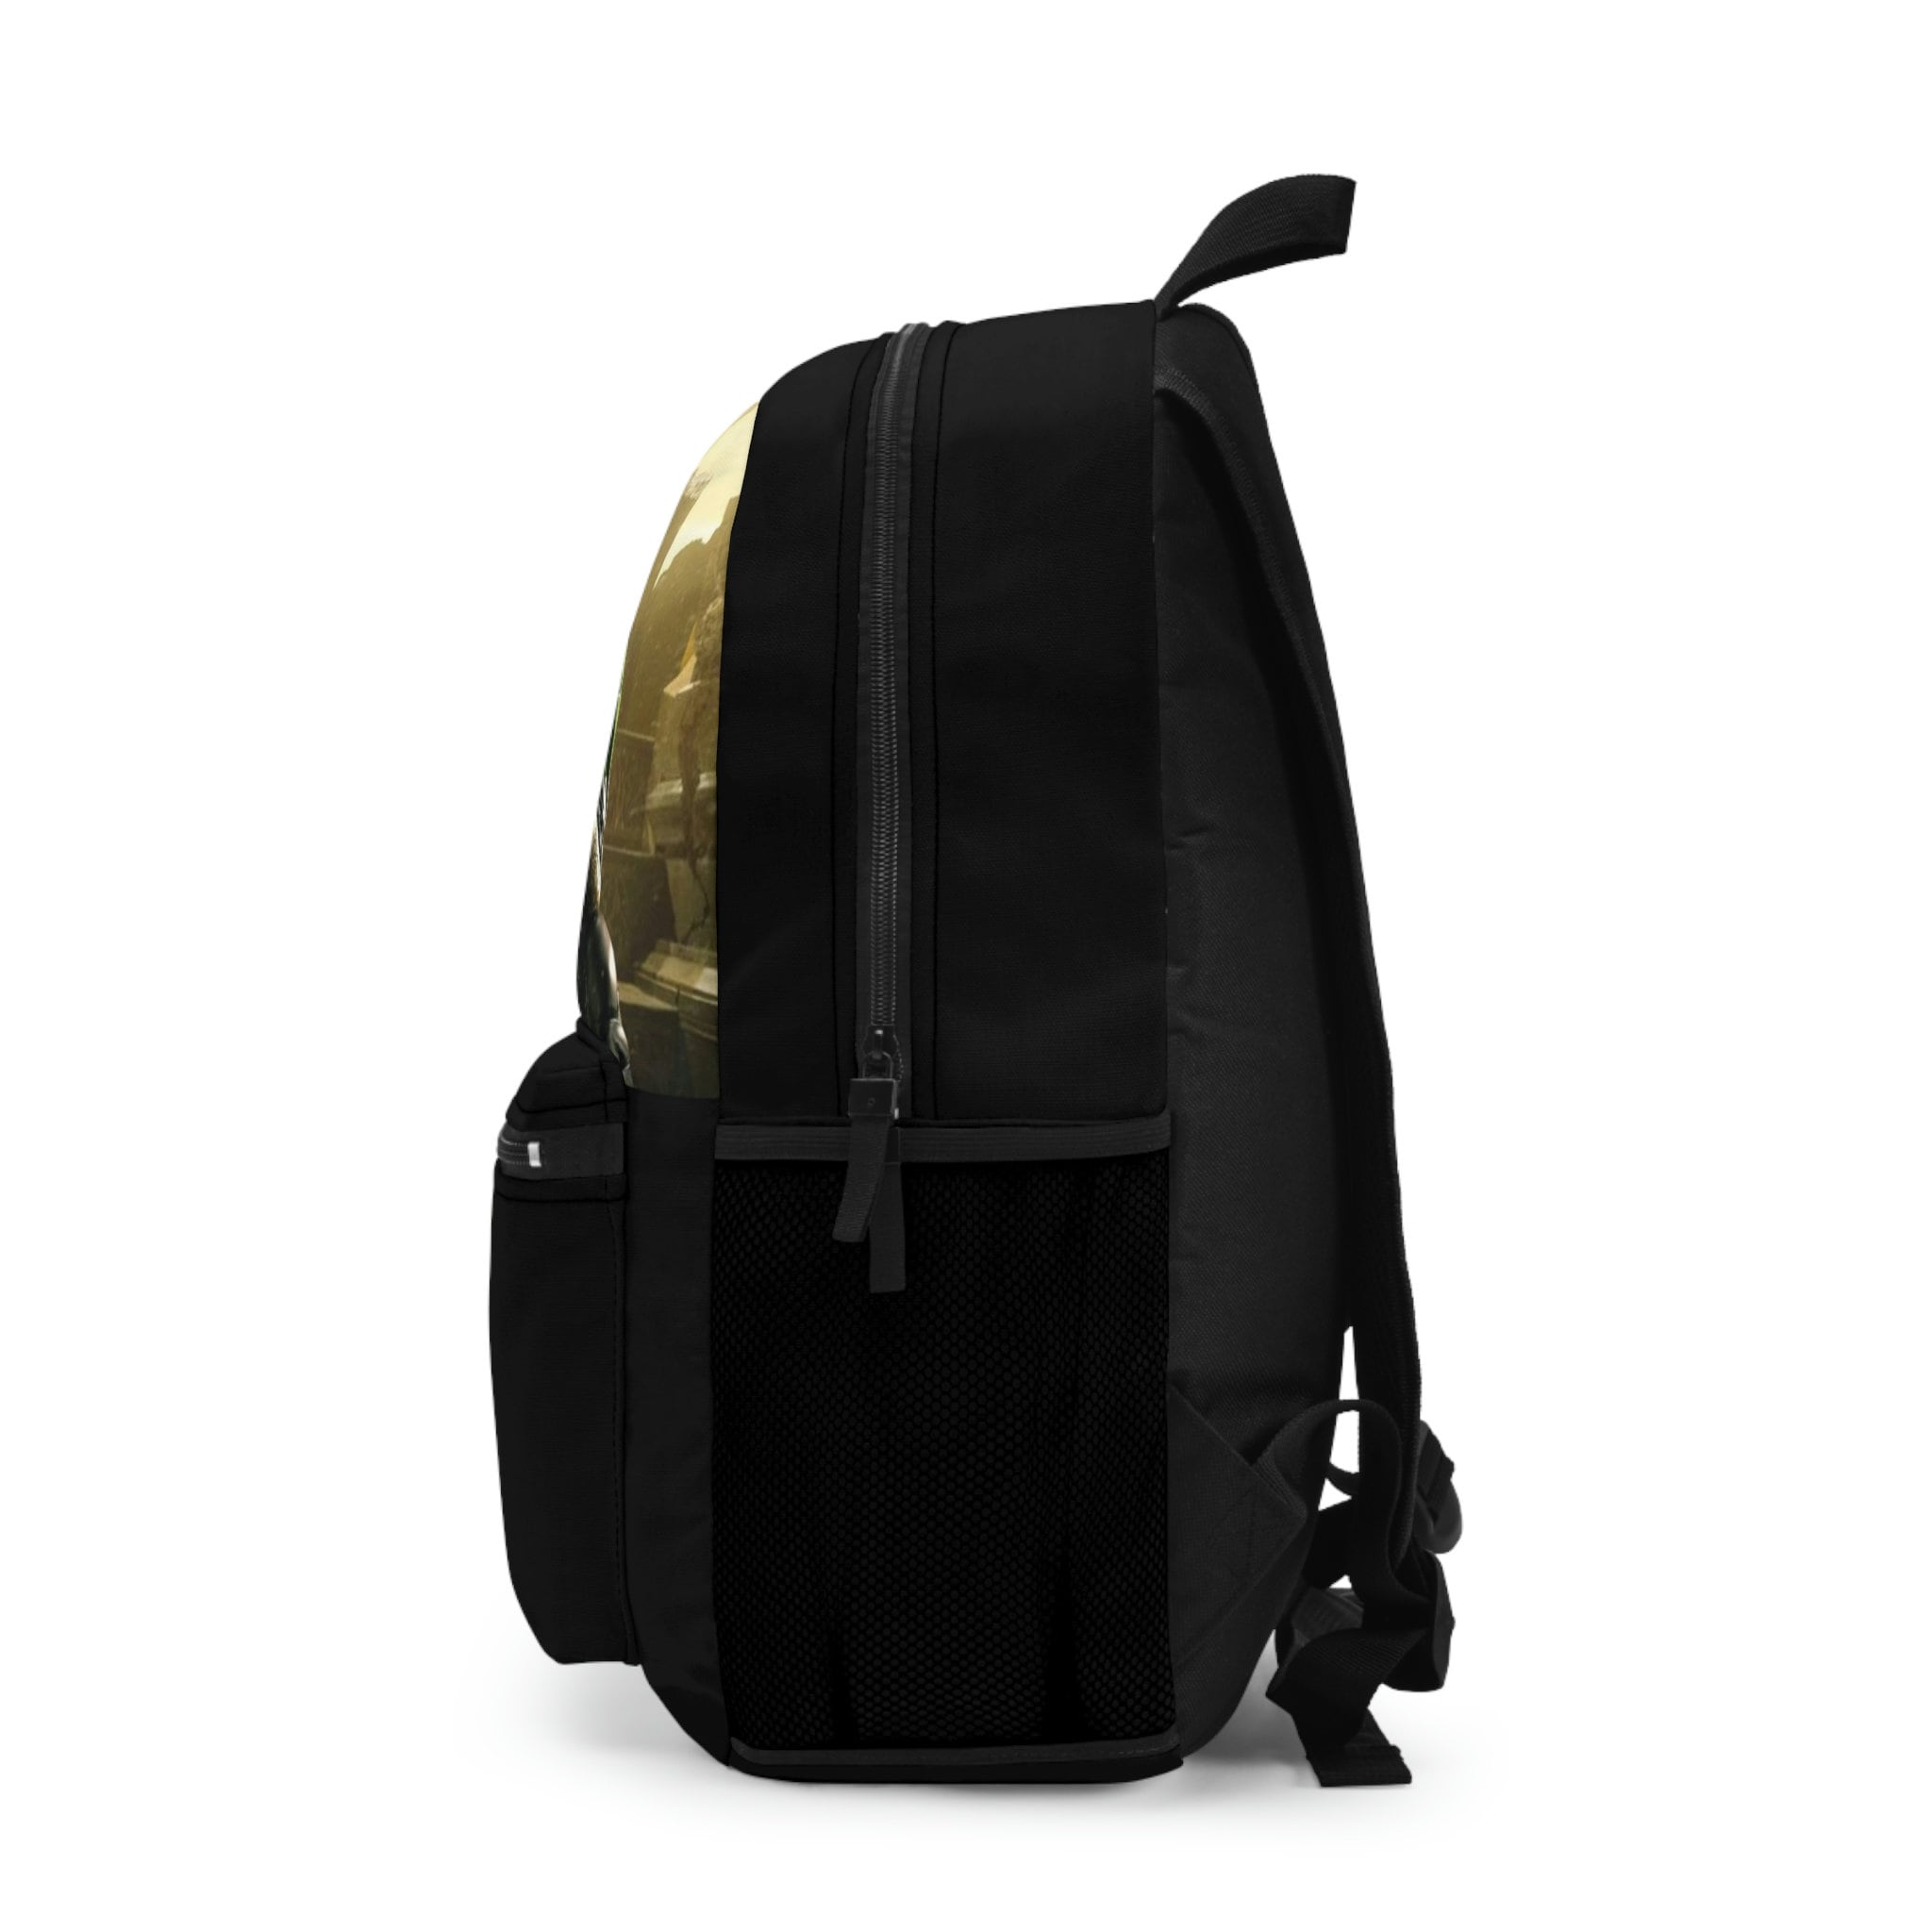 Loki Backpack, Loki God of Mischief Book Bag, For Avenger Fans